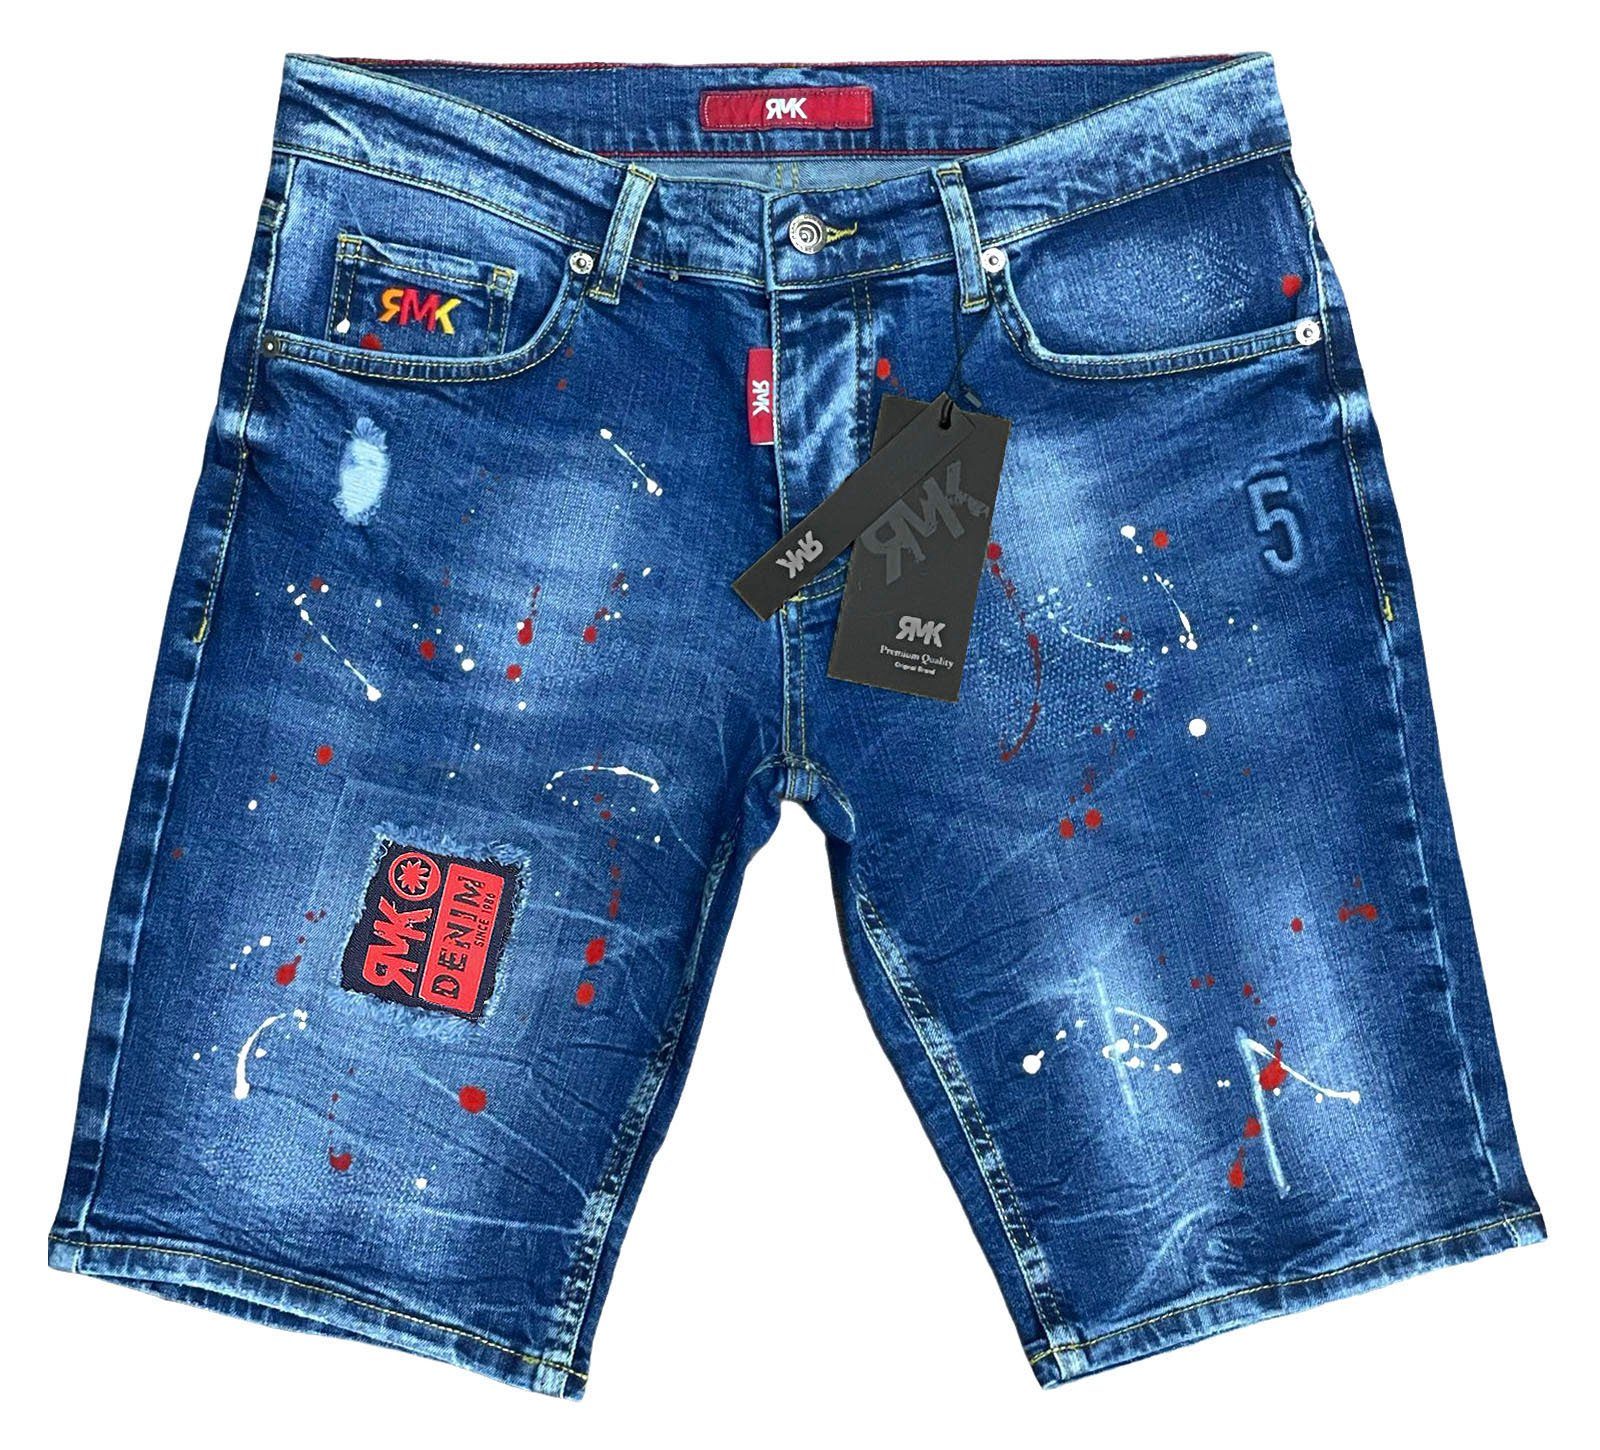 5 short mit Blue RMK Jeans Pocket Farbspritzern Jeansshorts